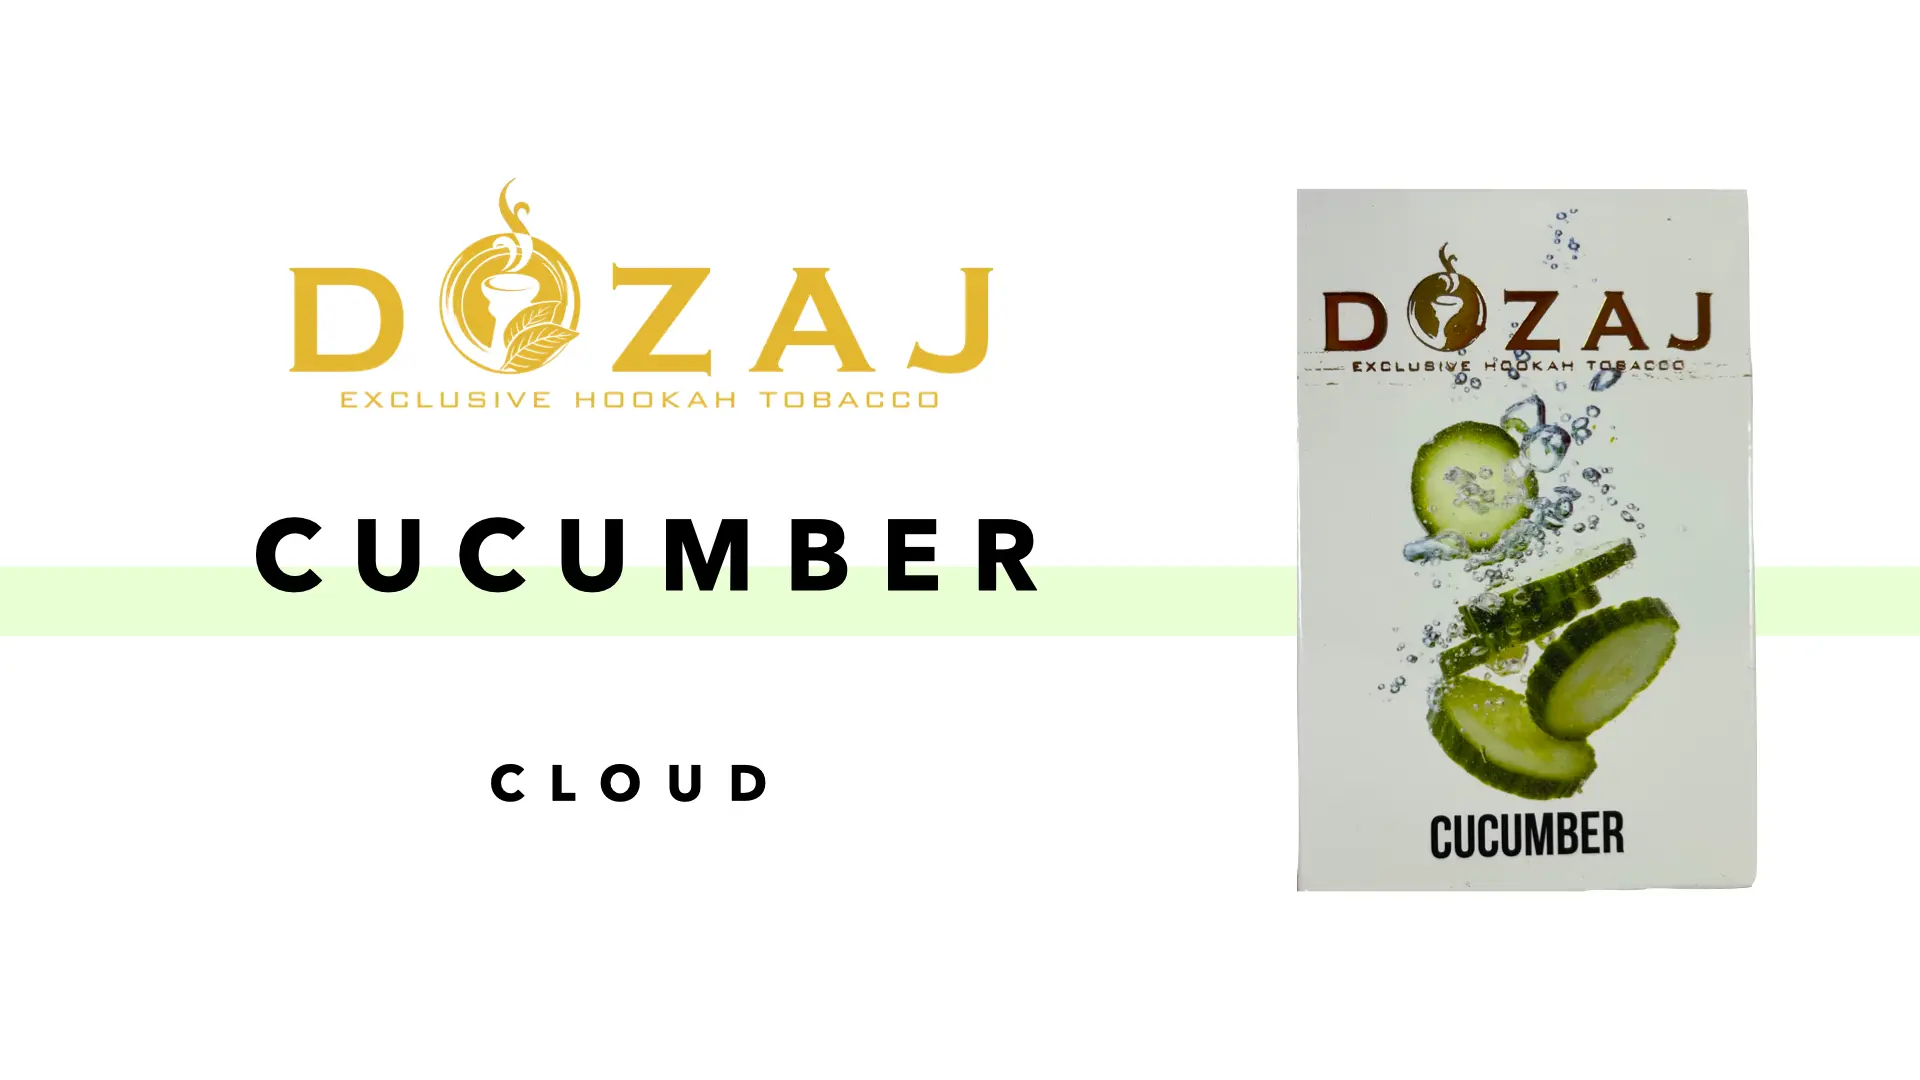 DOZAJ(ドザジ) cucumber(キューカンバー/きゅうり) フレーバーレビュー